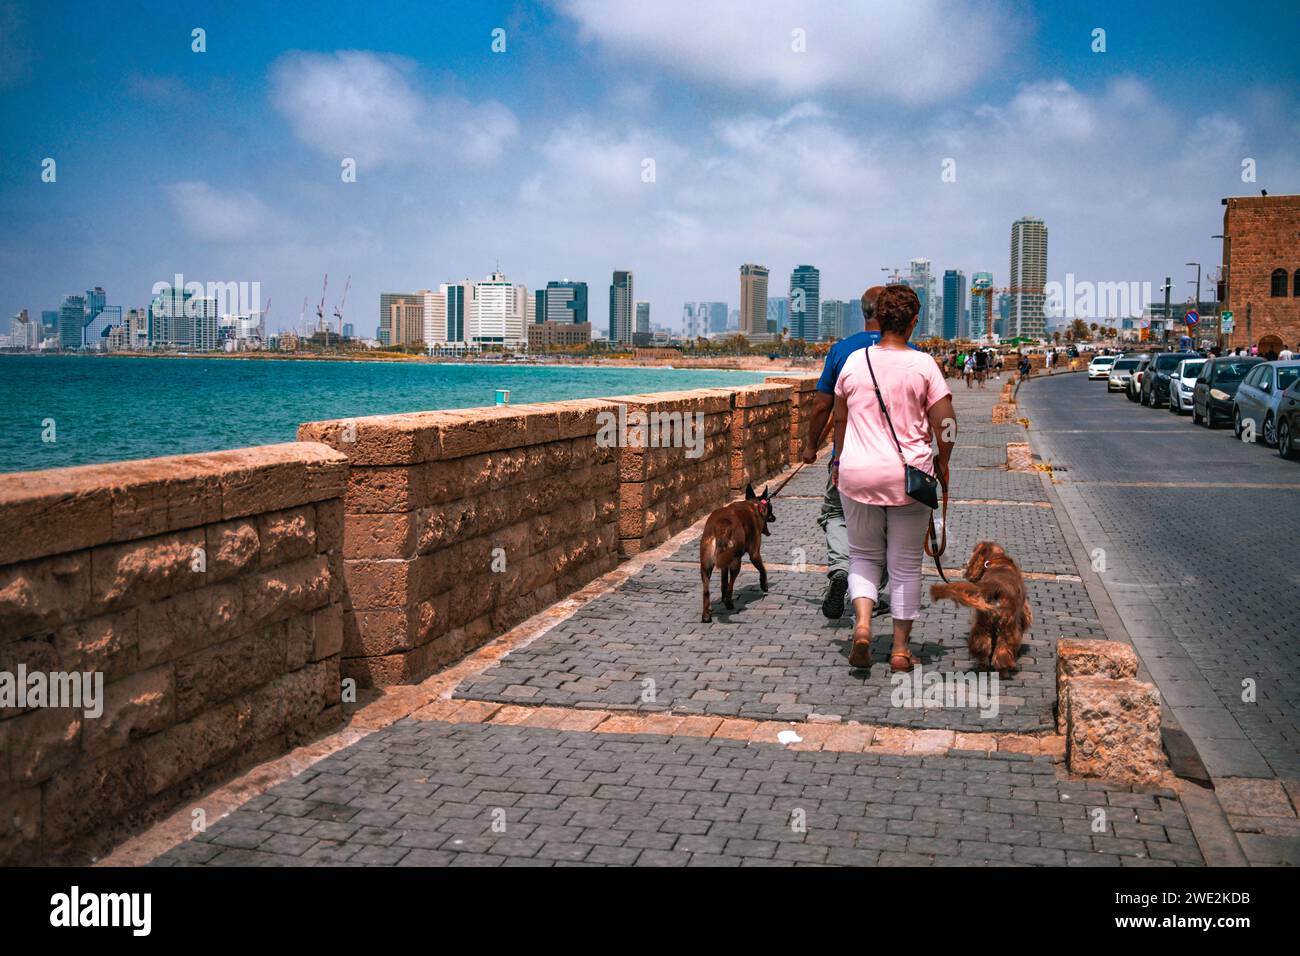 Eine Person genießt einen gemütlichen Spaziergang mit ihren Hunden entlang der malerischen Tel Aviv-Jaffa Promenade mit Blick auf das pulsierende Mittelmeer und den Skylin der Stadt Stockfoto